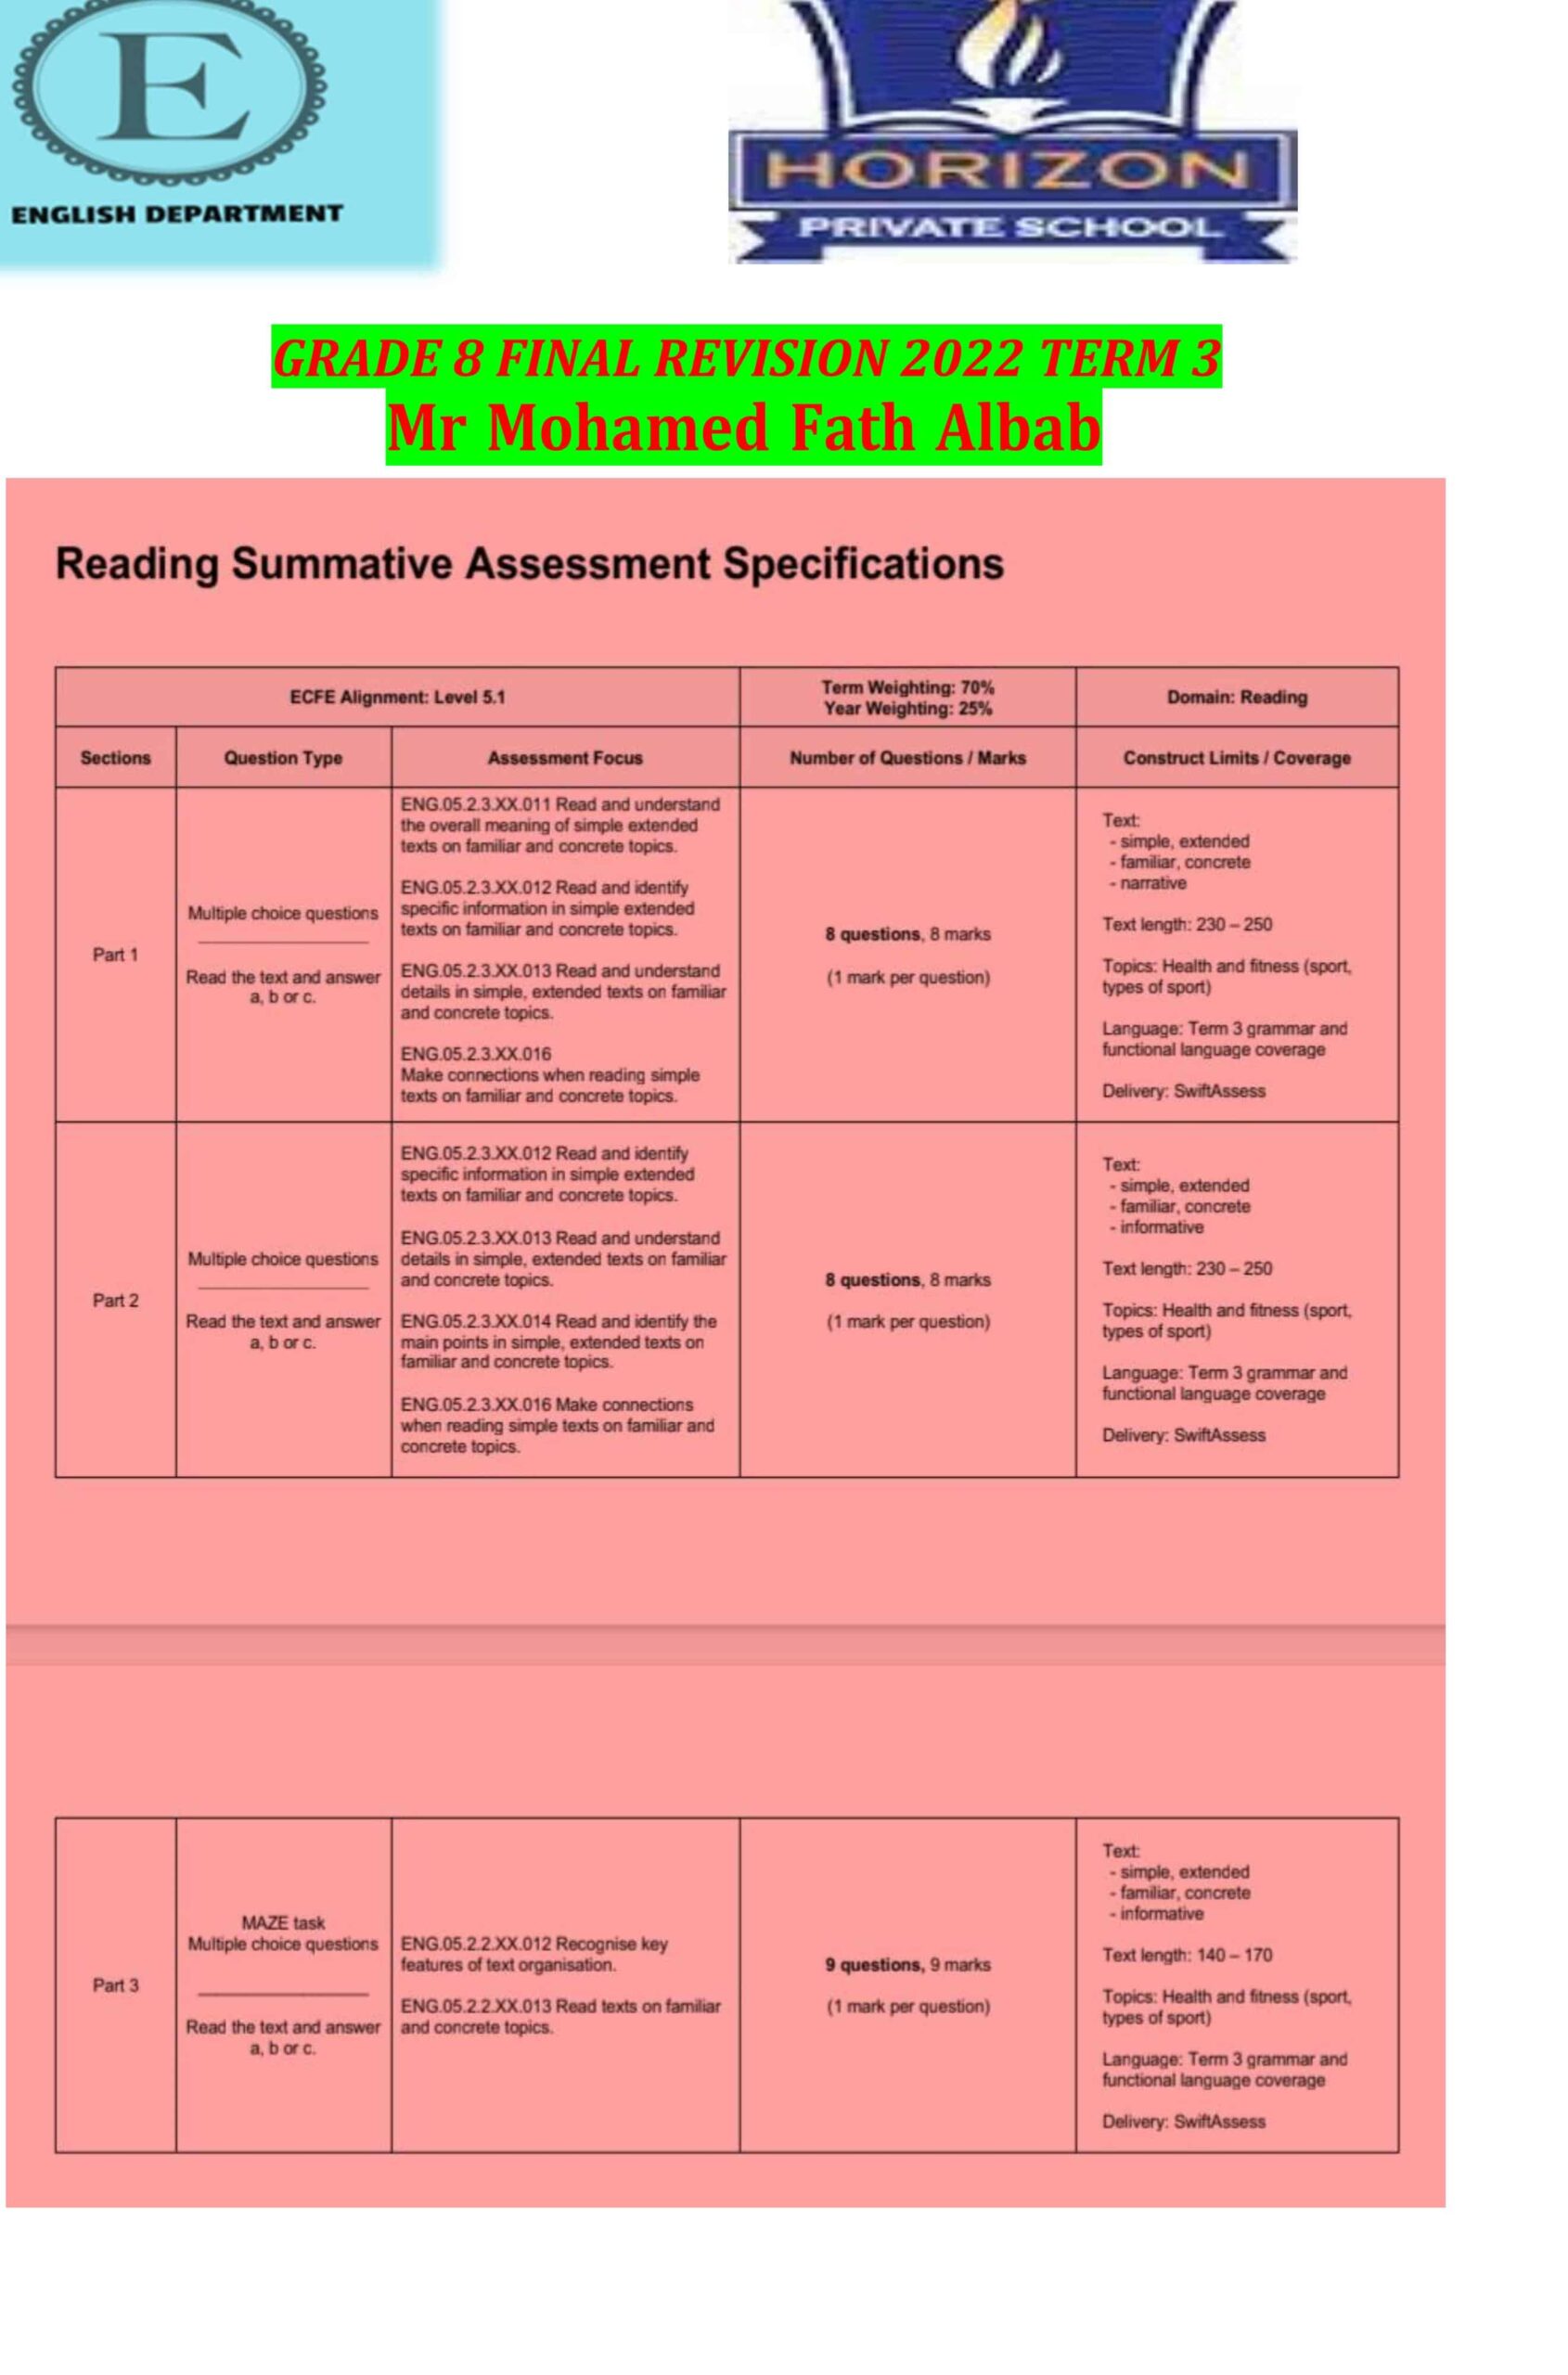 أوراق عمل FINAL REVISION حسب هيكل امتحان اللغة الإنجليزية الصف الثامن 